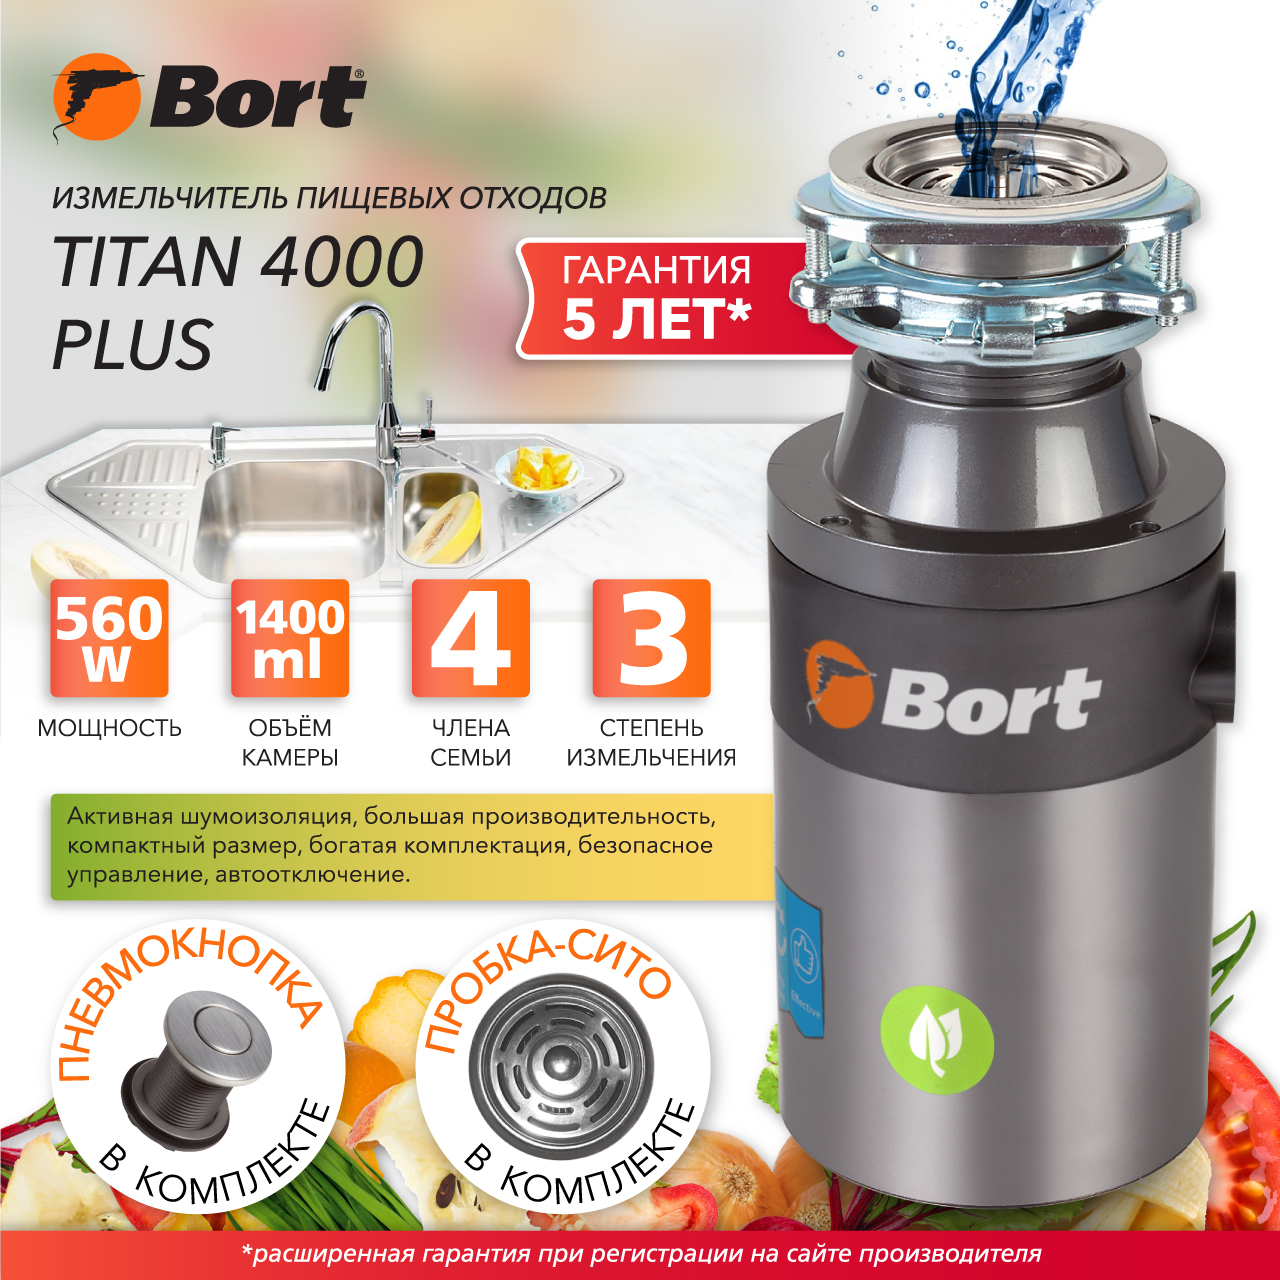 Измельчитель пищевых отходов Bort TITAN 4000 PLUS (91275776) серебристый измельчитель пищевых отходов bort alligator x